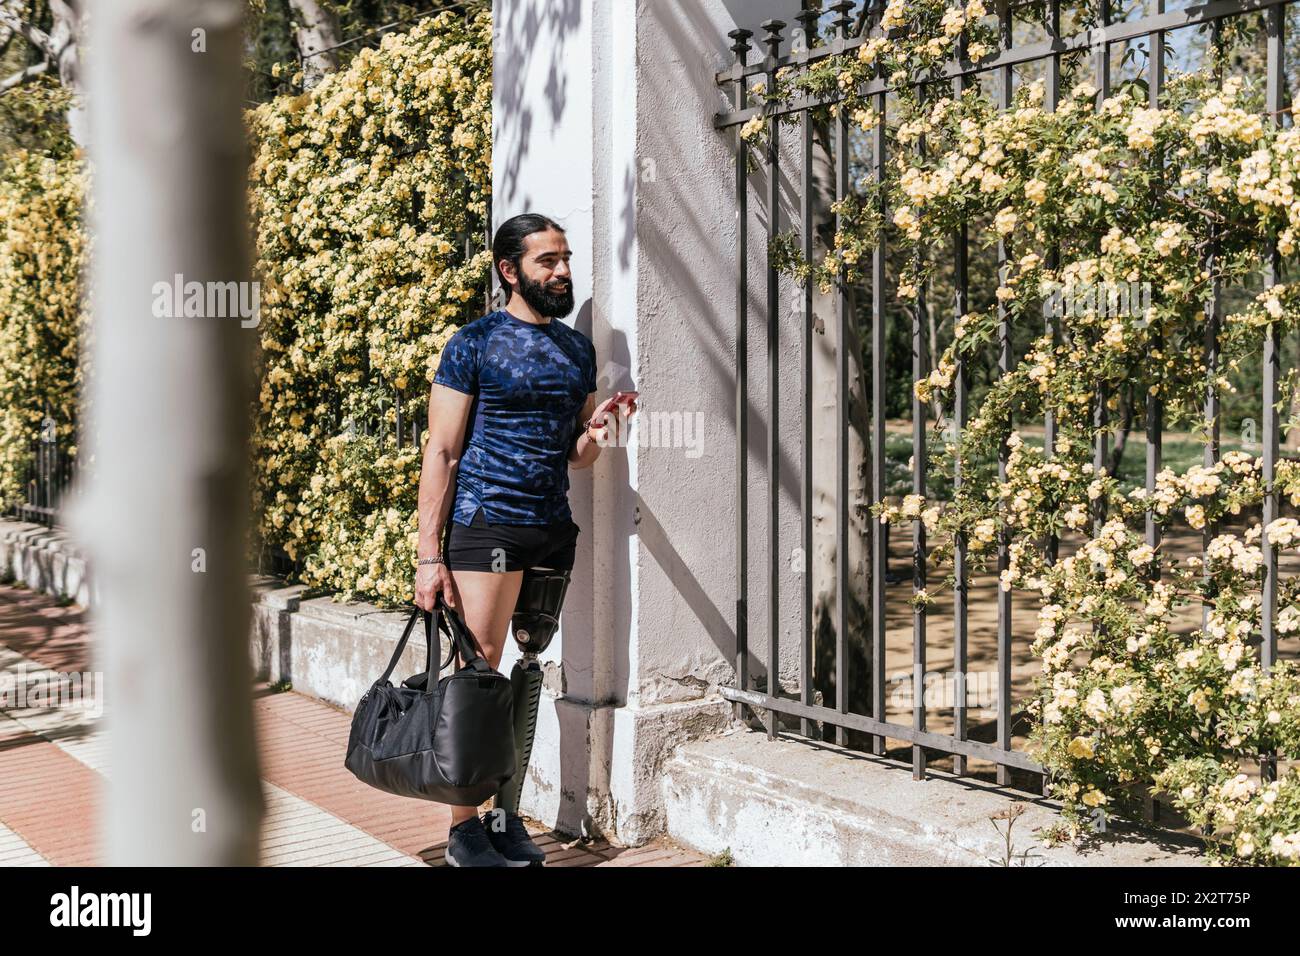 Athlet mit prothetischem Bein am Zaun angelehnt Stockfoto